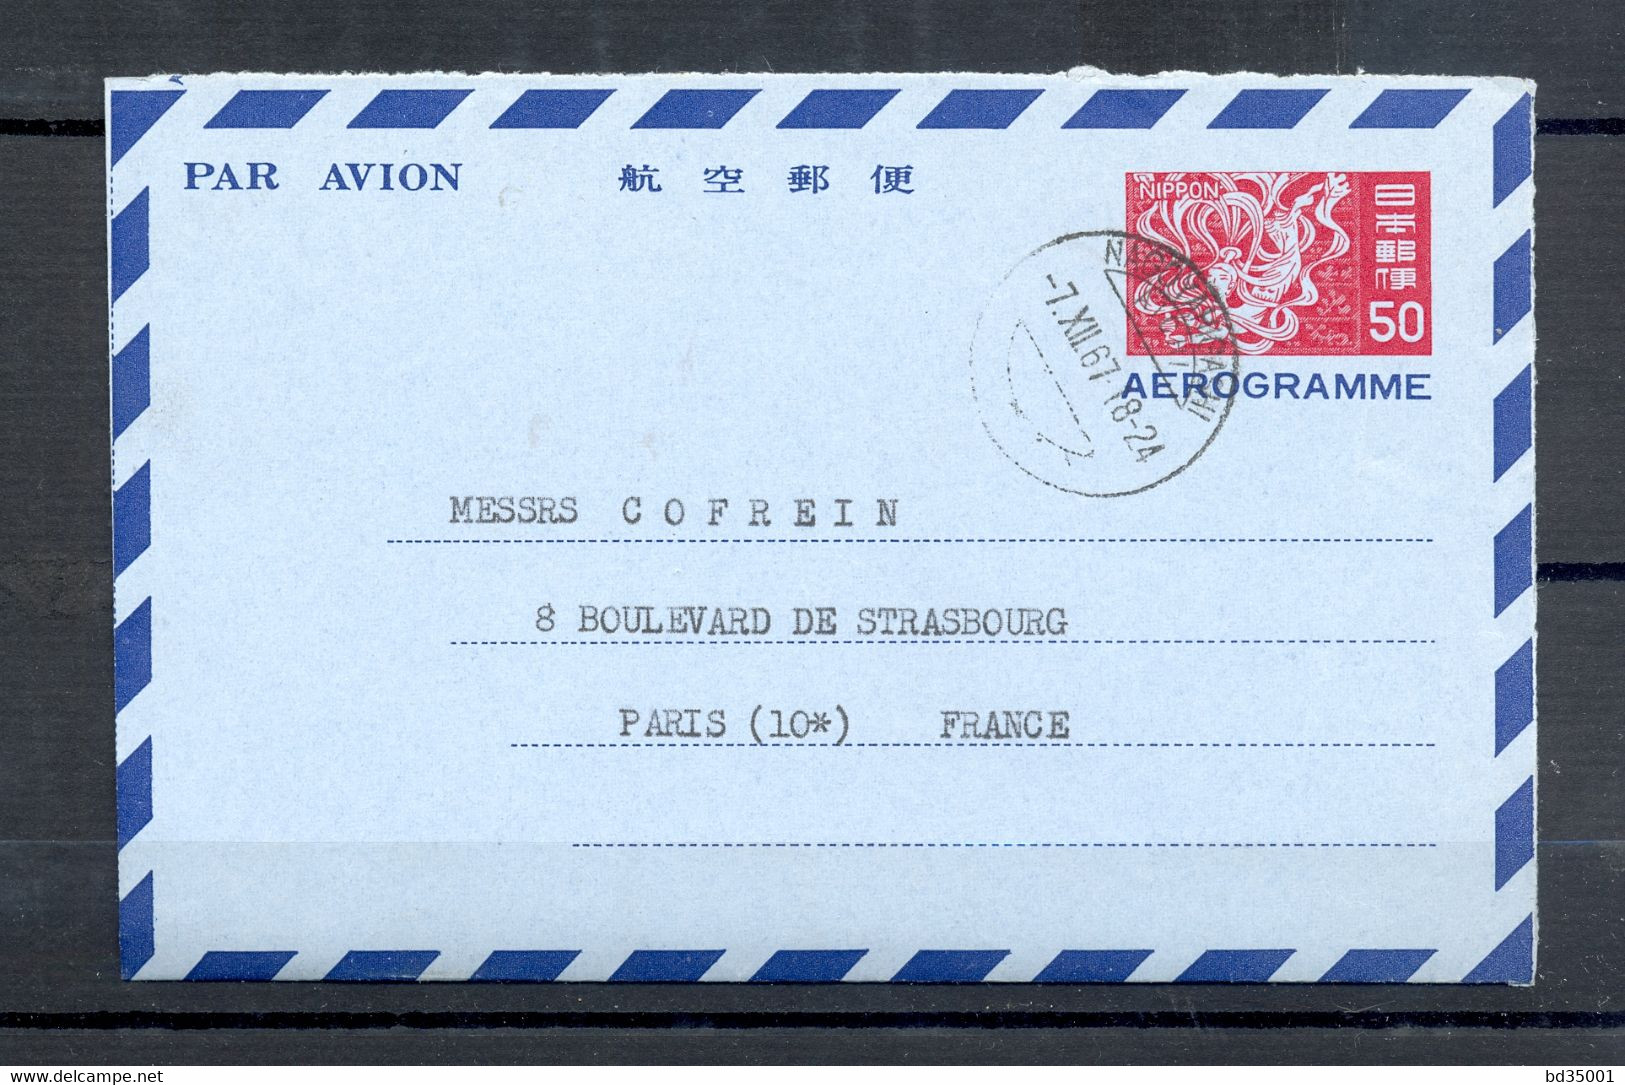 AEROGRAMME - AIR LETTER - JAPON - JAPON - 1967 - NAGOYA VERS PARIS - CACHET NAGOYA- (4) - Aerogramme